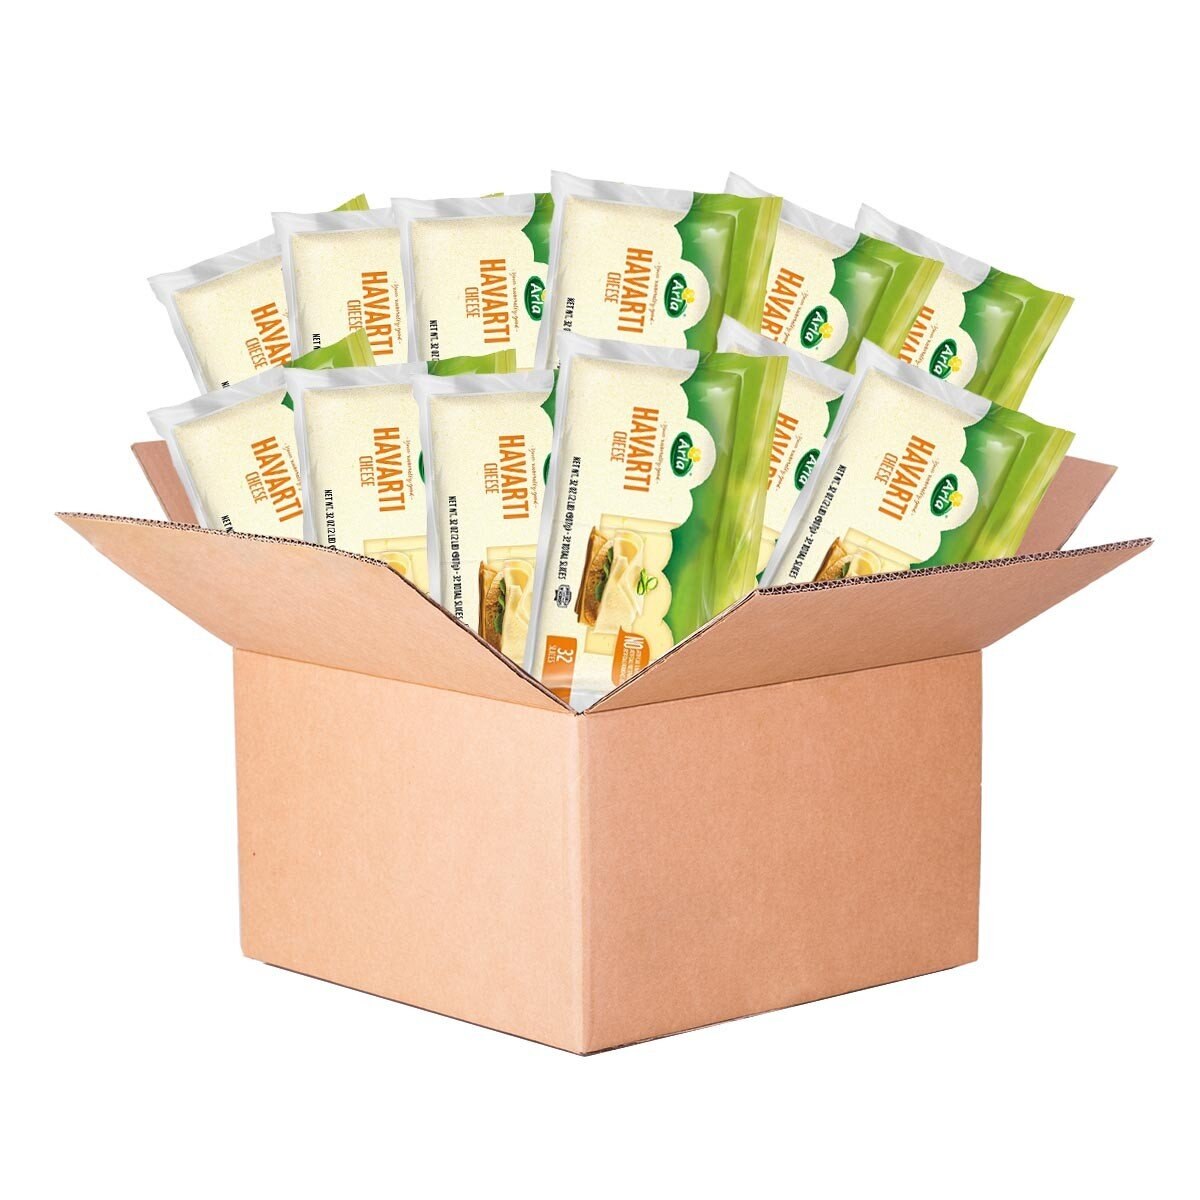 Arla 哈伐第切片乾酪 907公克 X 12包 僅配送至台中市部分區域